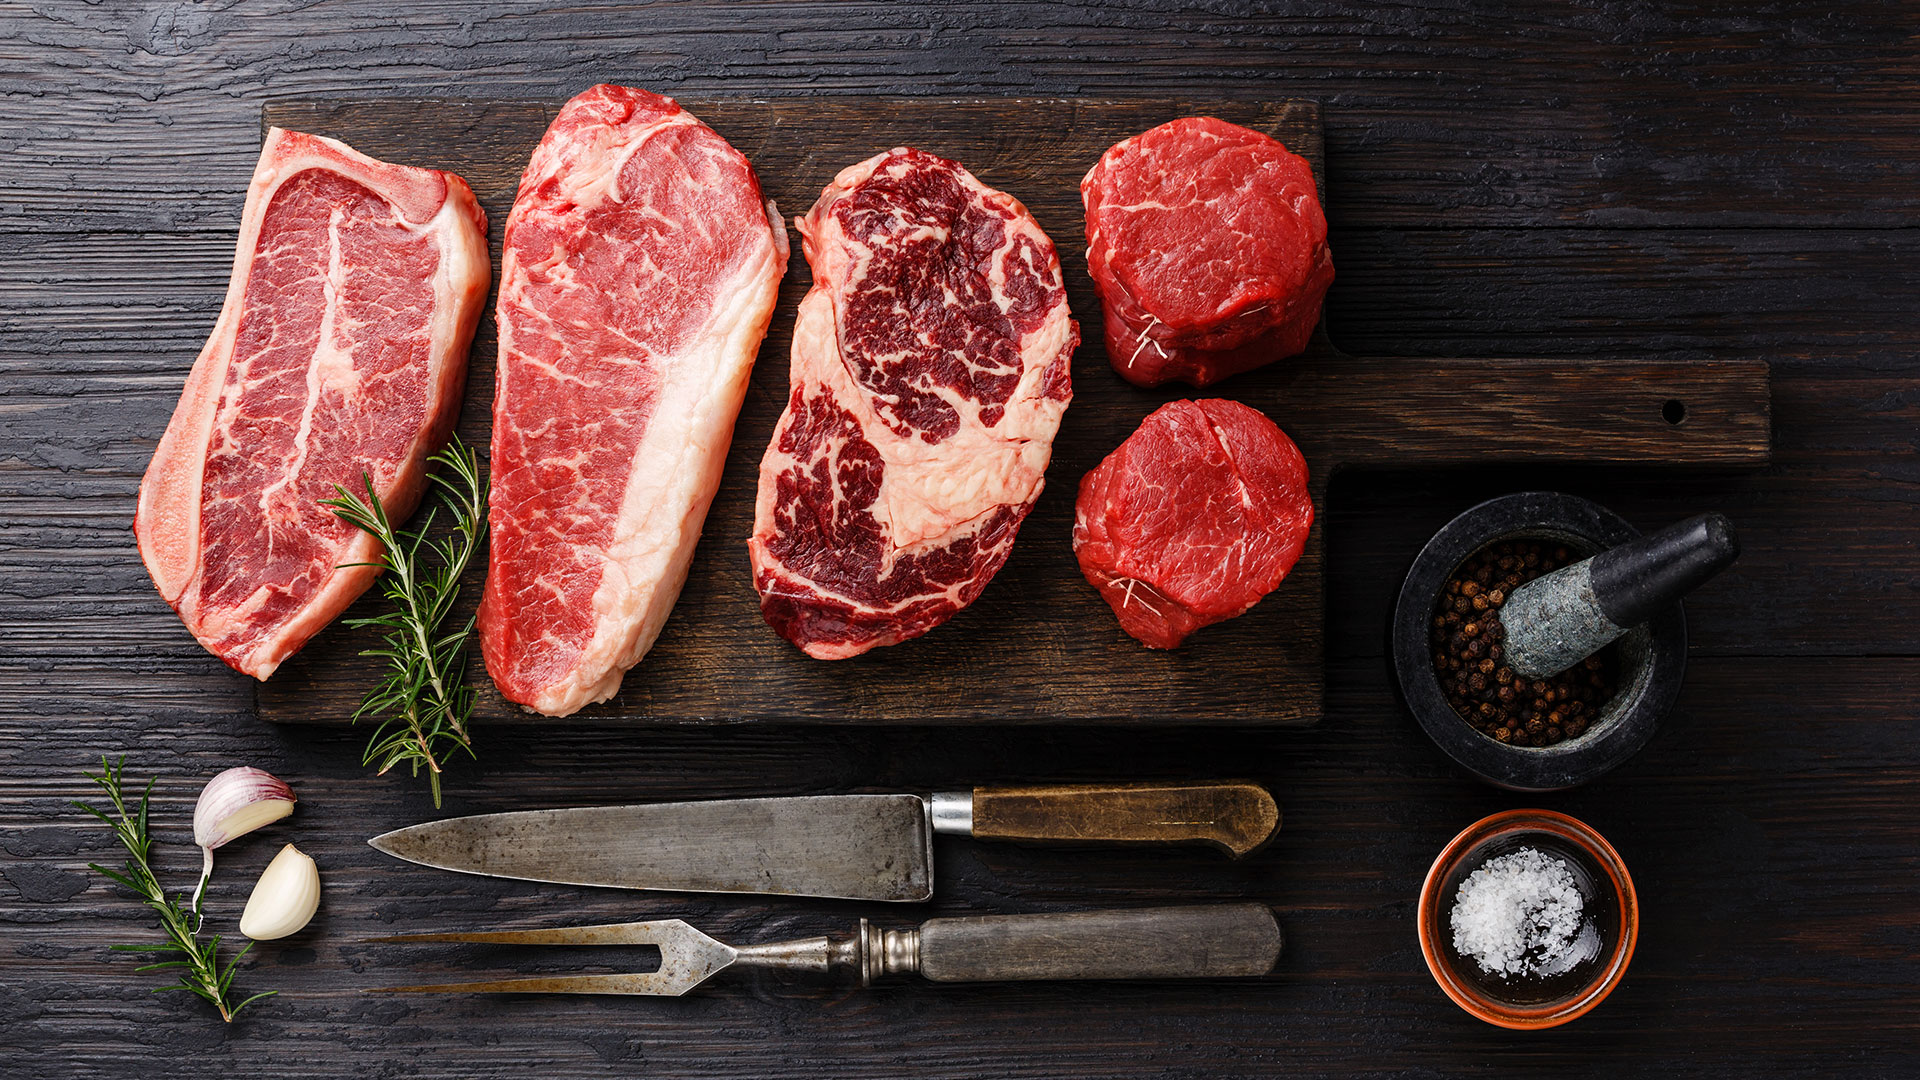 Các món ăn được chế biến từ thịt bò chứa rất nhiều chất dinh dưỡng